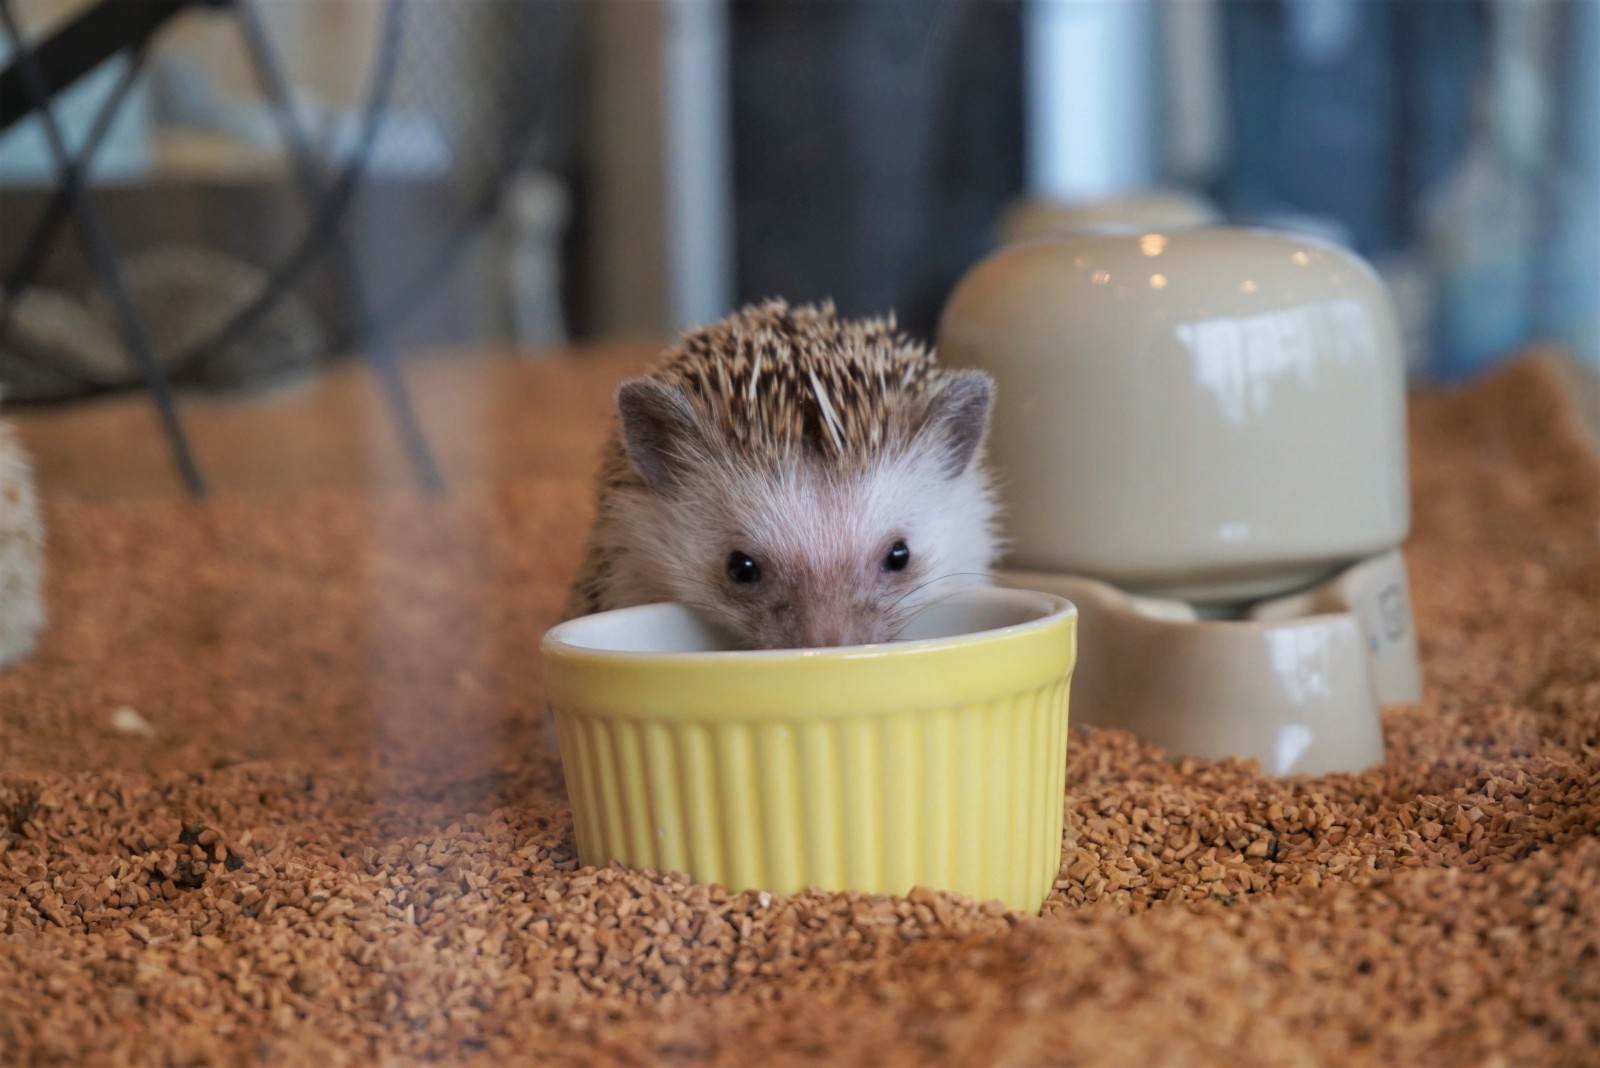 A little hedgehog eating food